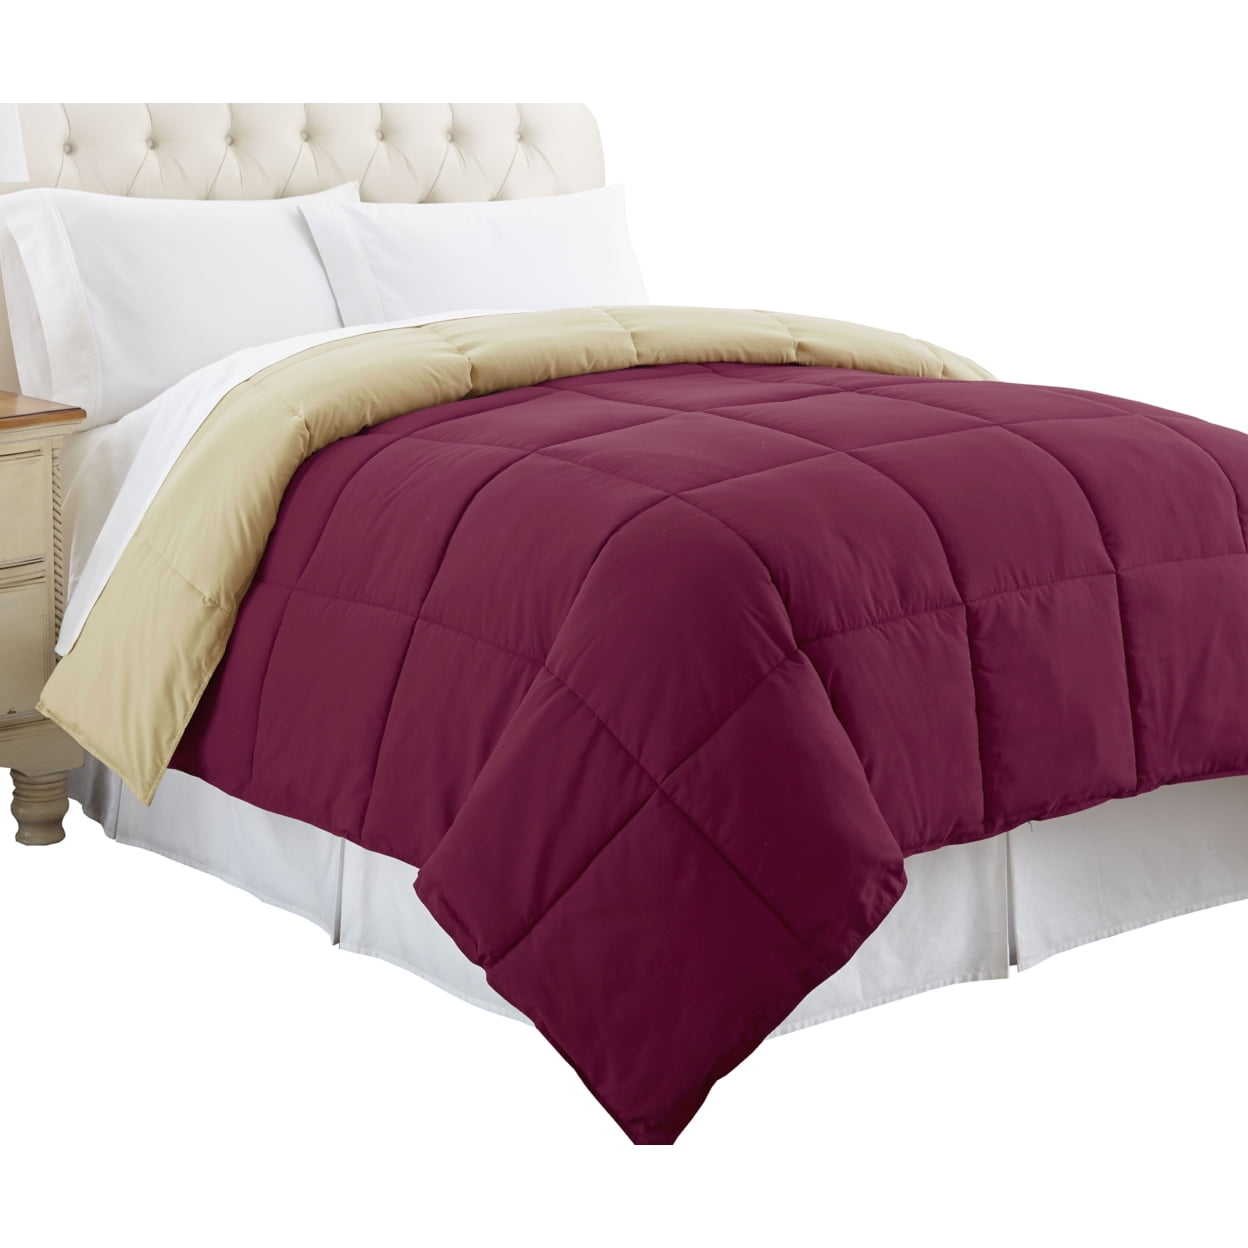 Bm46034 Genoa Queen Size Box Quilted Reversible Comforter, Pink & Beige